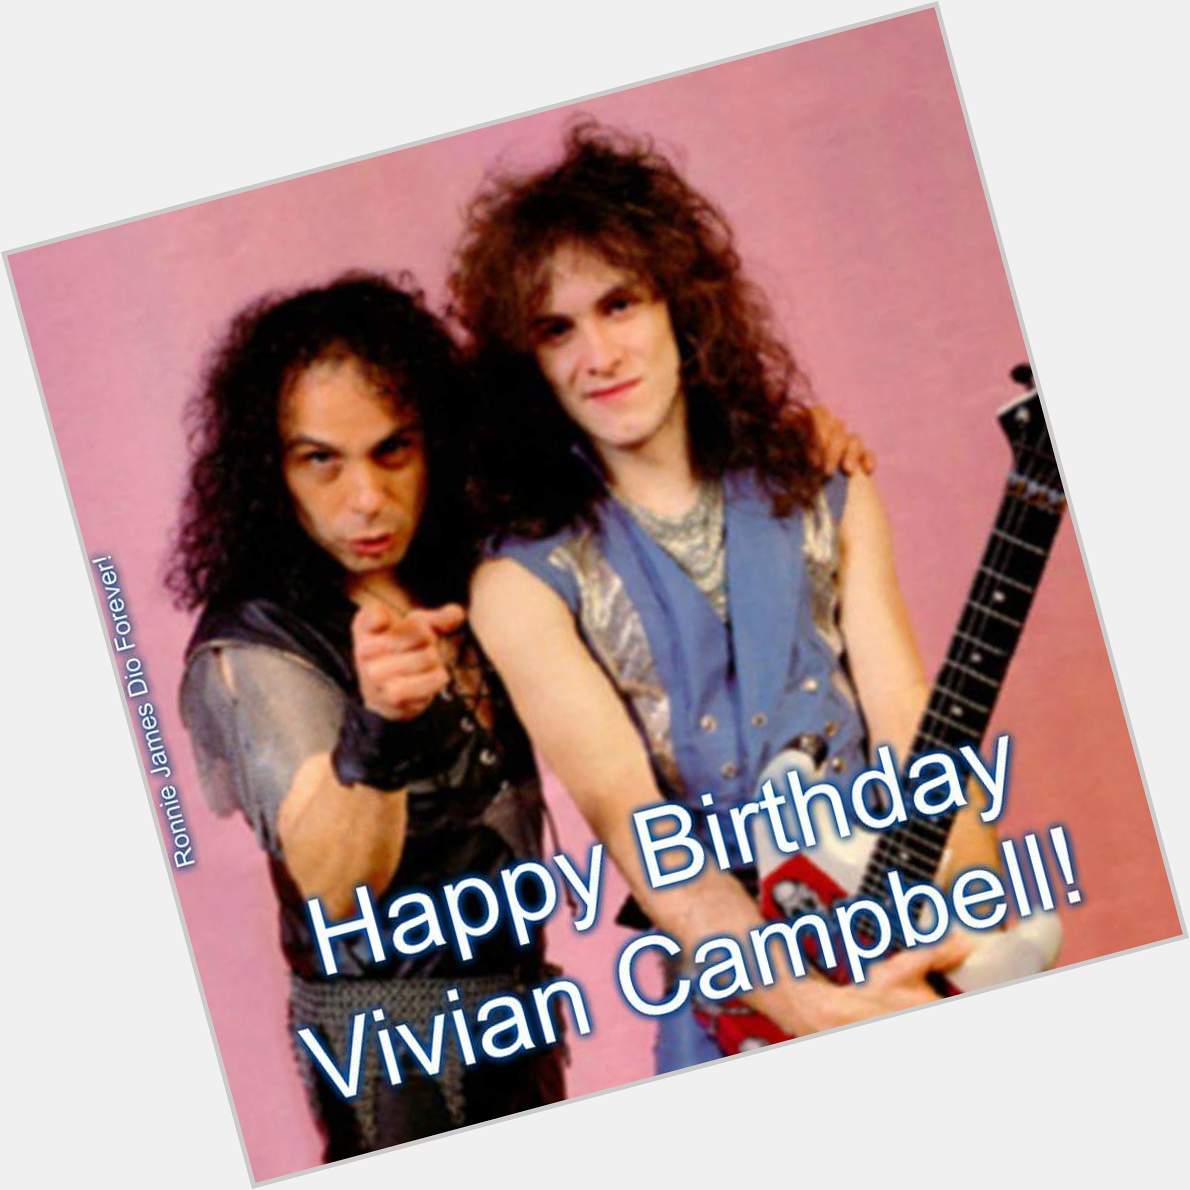 Happy birthday vivian campbell señores señoras hasta mañana buen descanso , cuidense y que sea rock y buena musica 